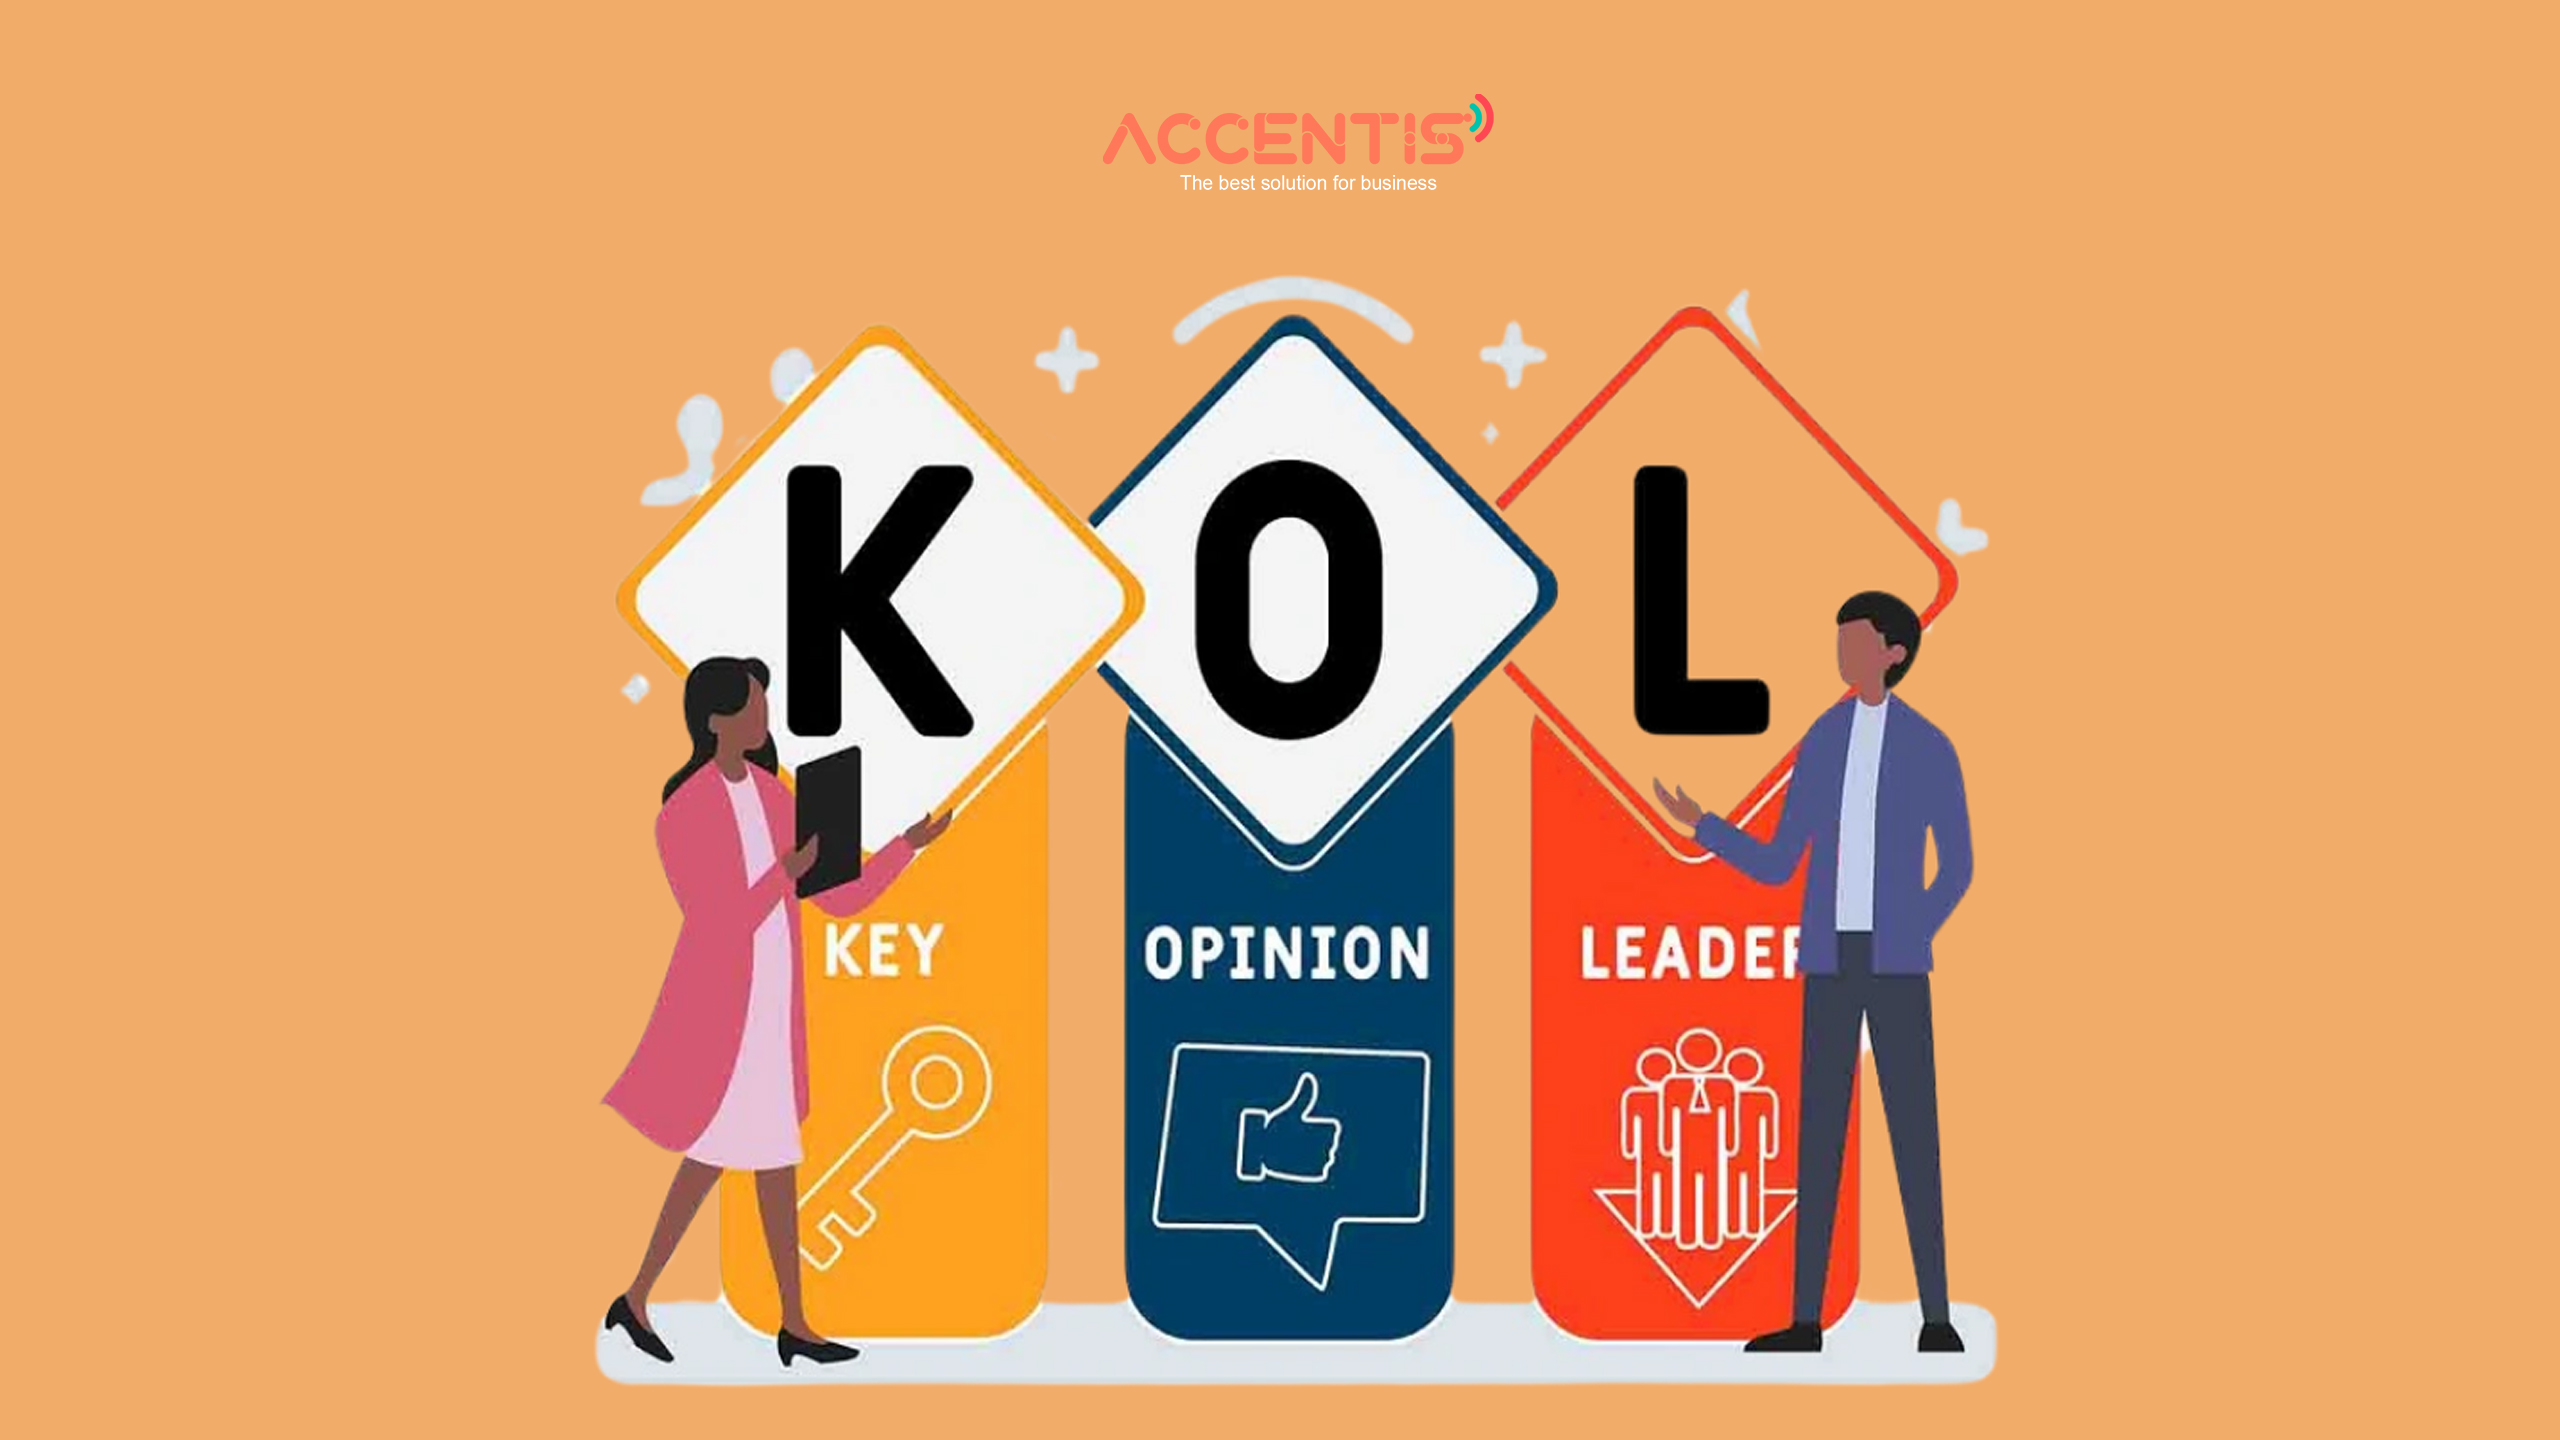 KOL (Key Opinion Leader) là một thuật ngữ được sử dụng để chỉ những người có ảnh hưởng và tầm nhìn sâu sắc trong lĩnh vực cụ thể.